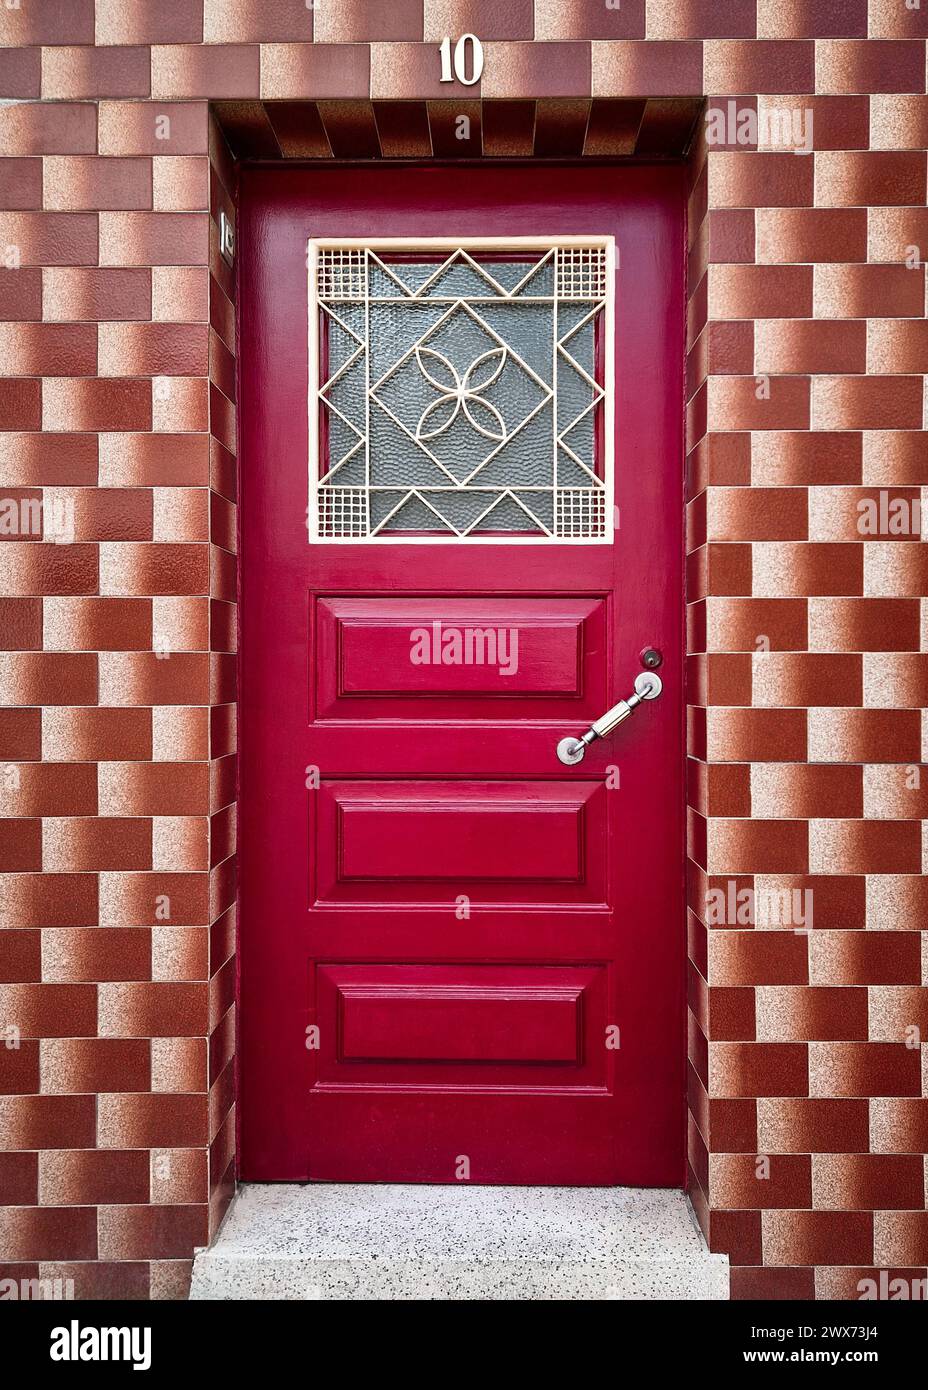 Façade d'une vieille maison restaurée avec des carreaux bruns vintage sur les murs et une porte en bois peinte dans une couleur rouge vif avec trappe décorative en métal Banque D'Images